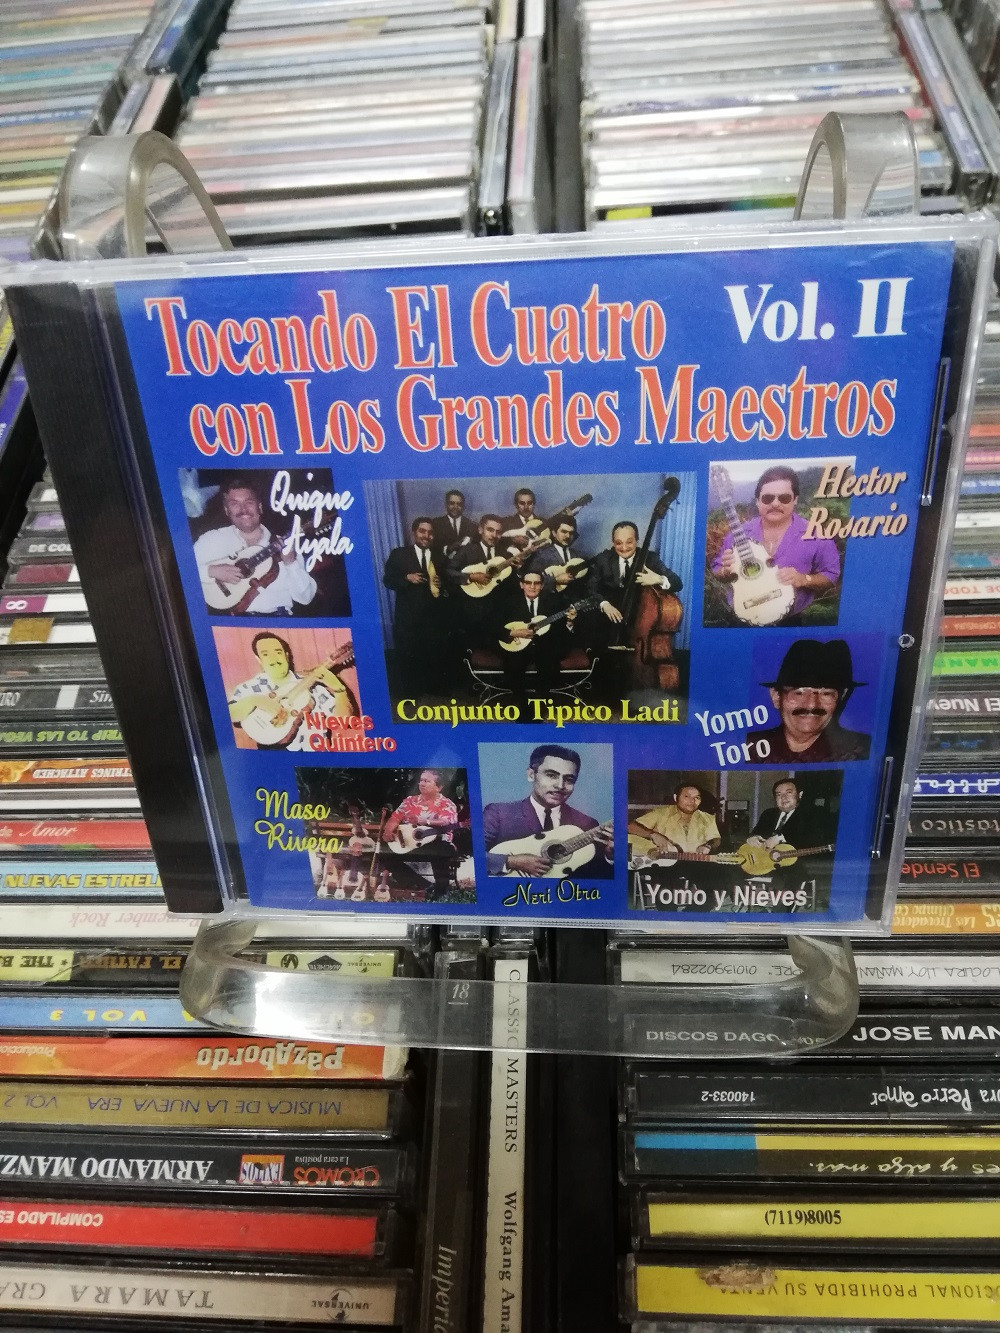 Imagen CD TOCANDO EL CUATRO CON LOS GRANDES MAESTROS VOL. 2 1